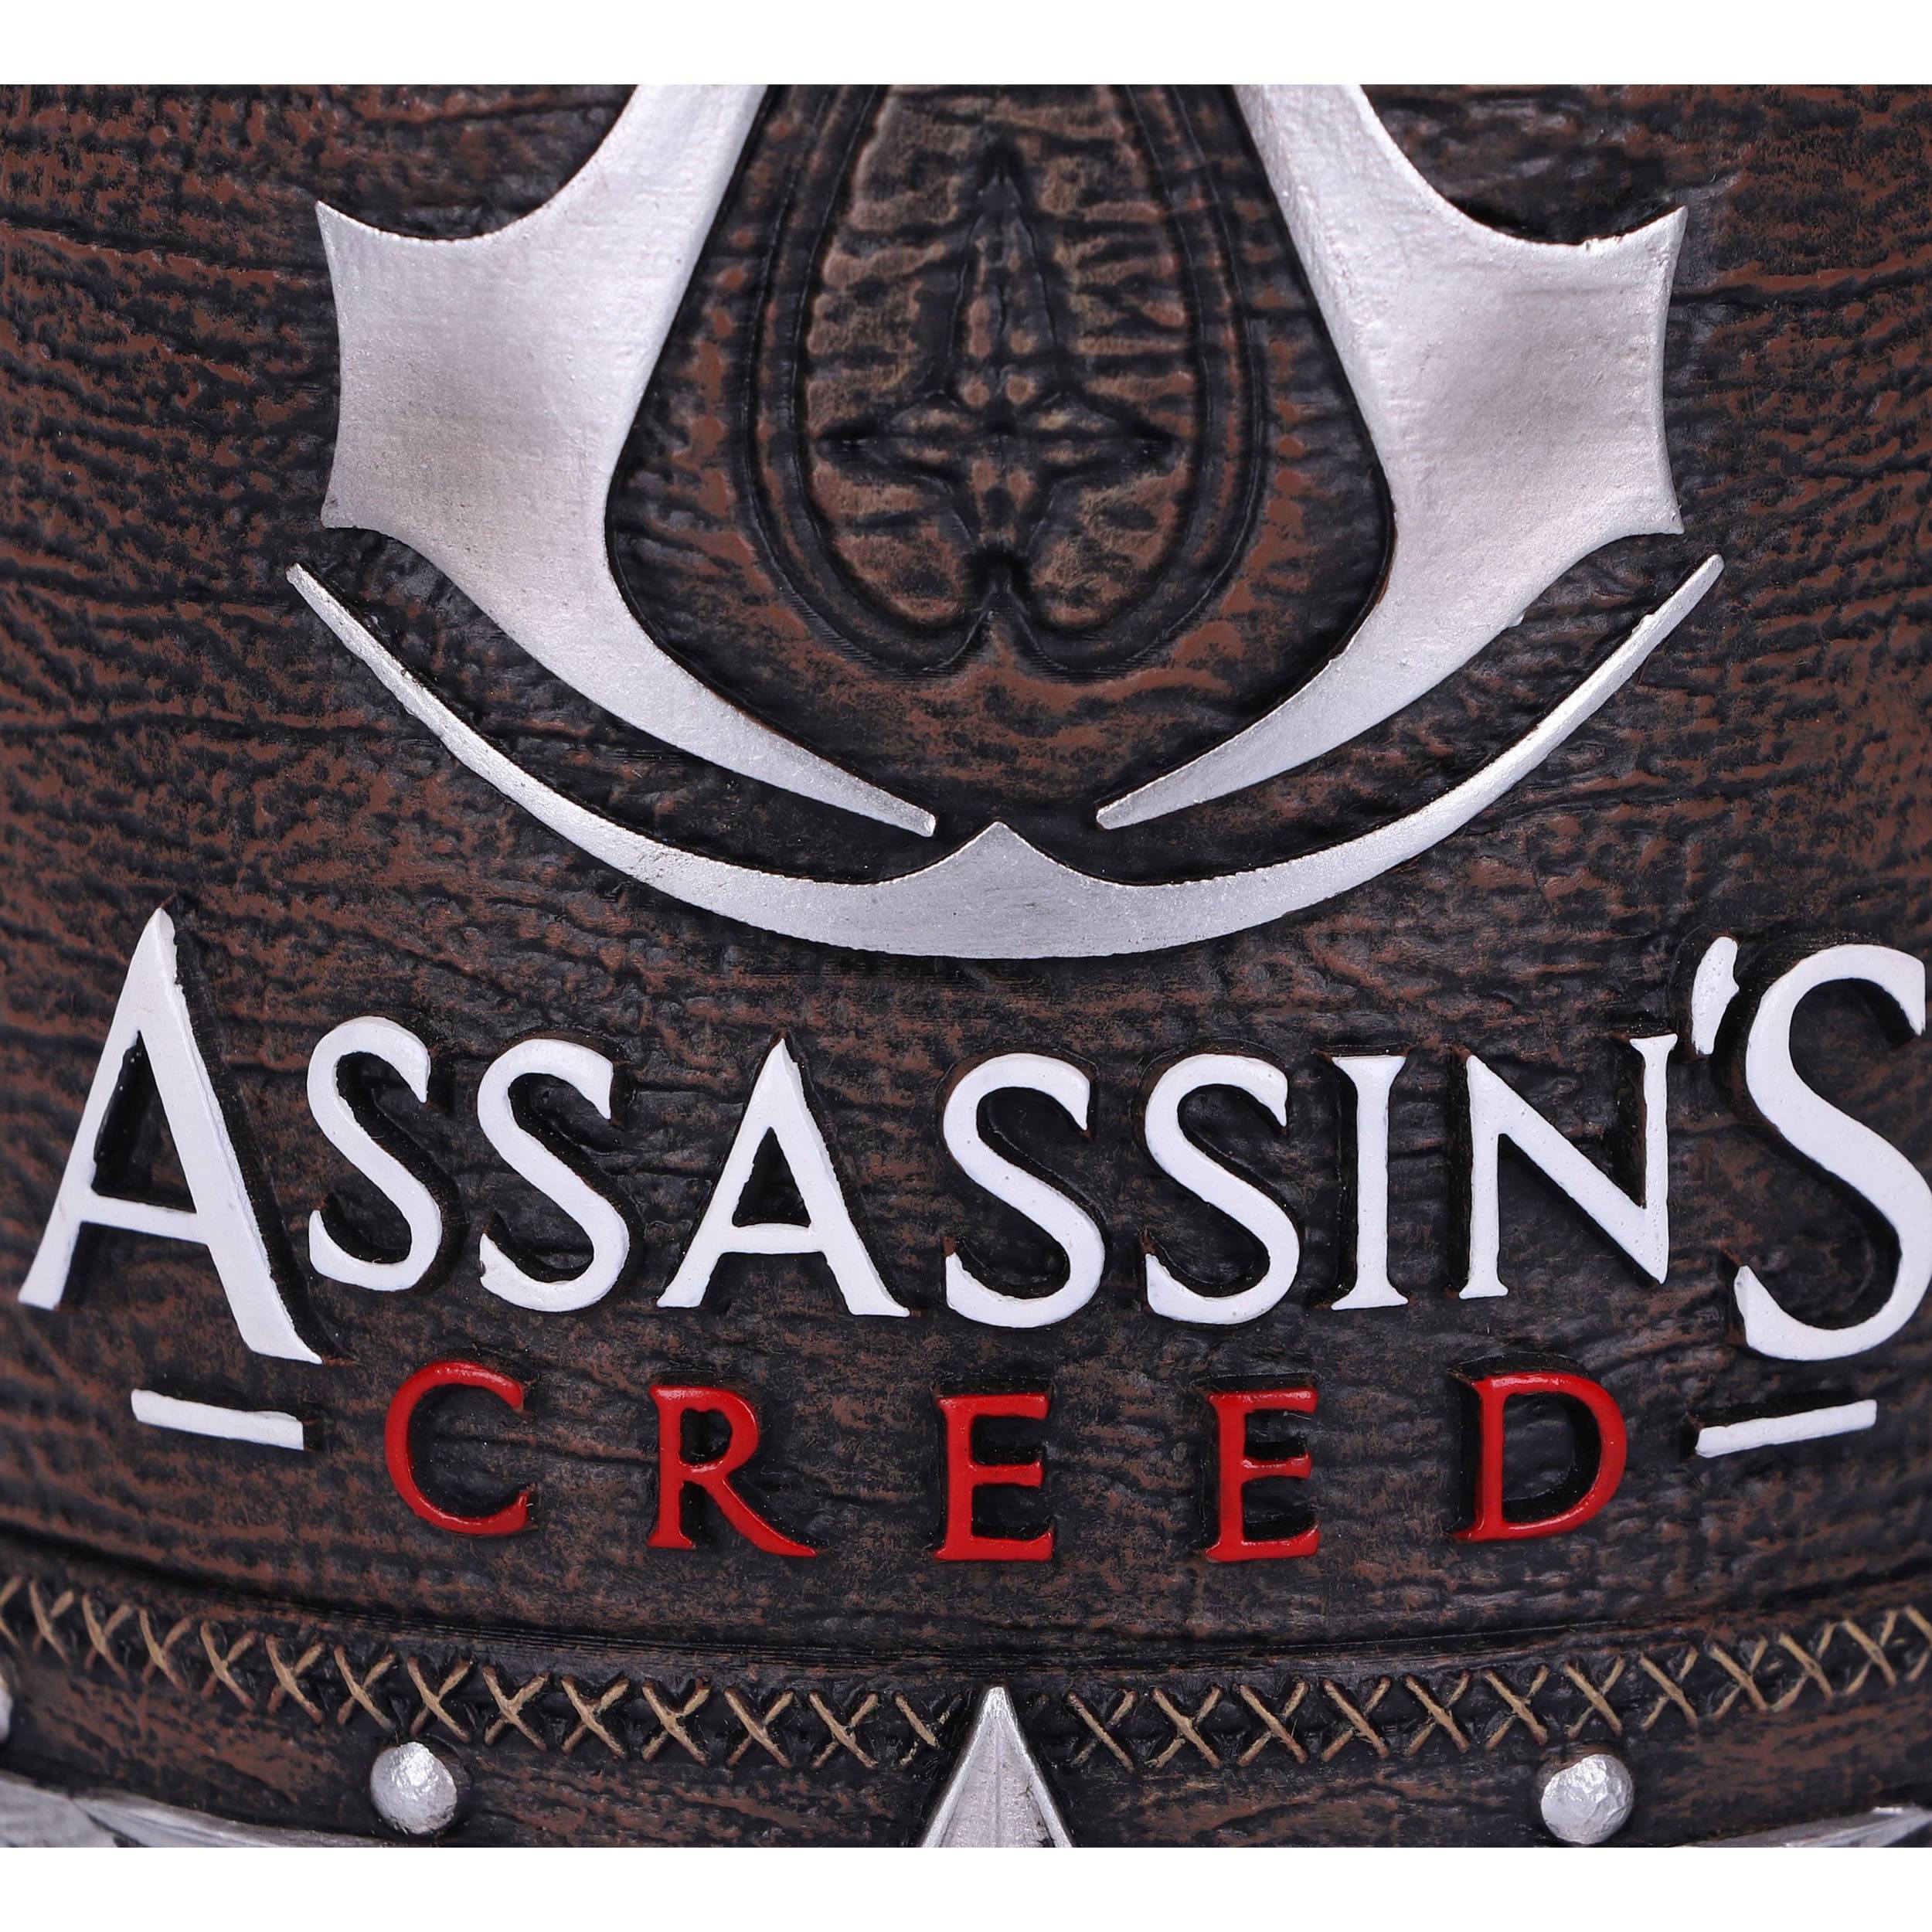 Assassin's Creed - Boccale della Confraternita.